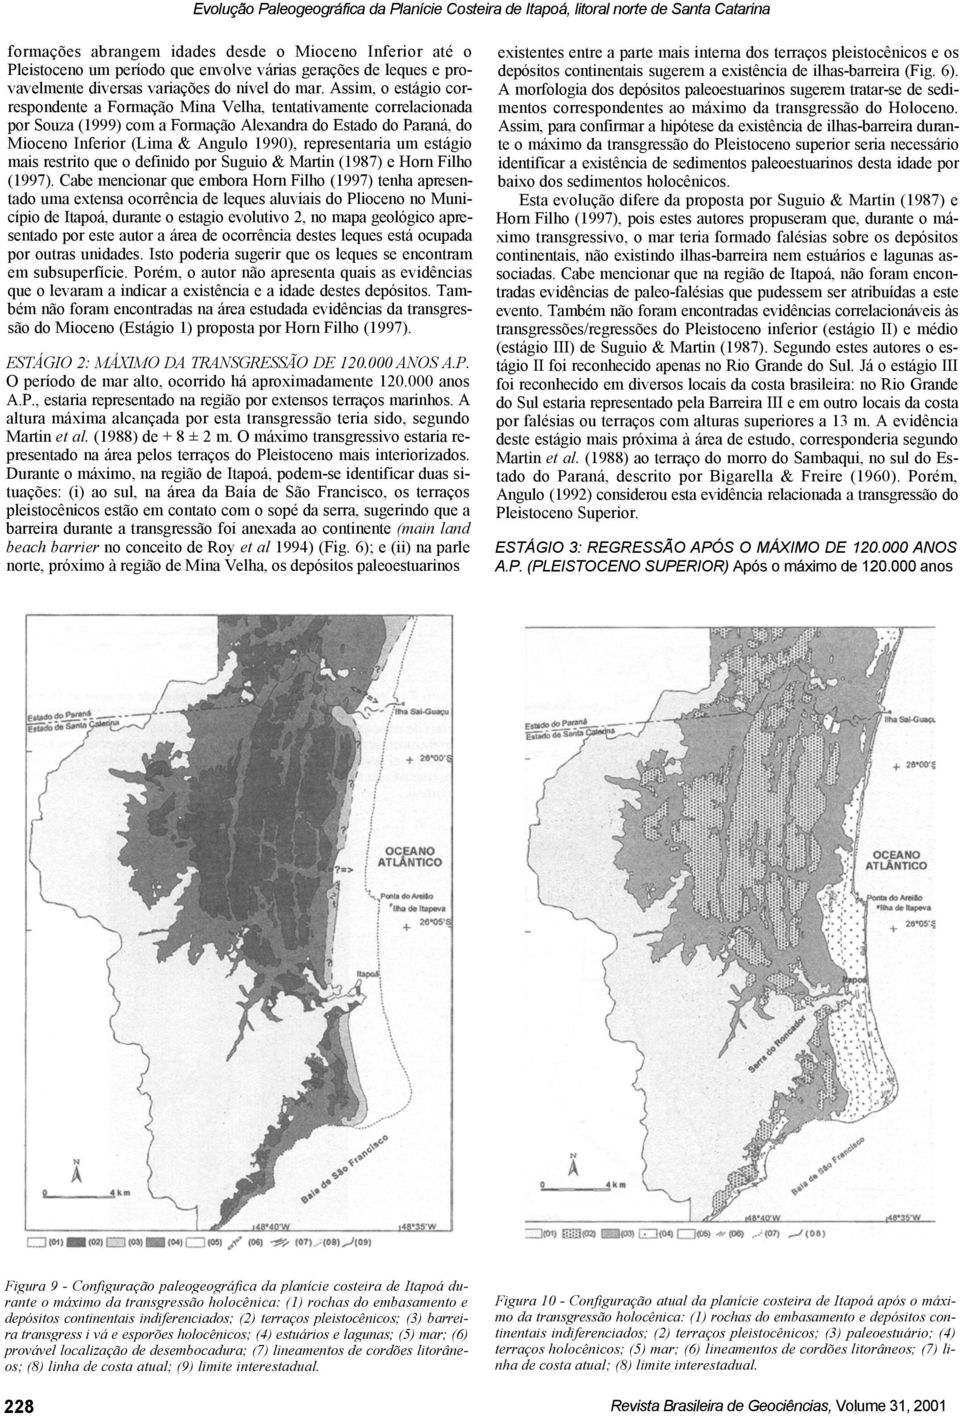 Assim, o estágio correspondente a Formação Mina Velha, tentativamente correlacionada por Souza (1999) com a Formação Alexandra do Estado do Paraná, do Mioceno Inferior (Lima & Angulo 1990),